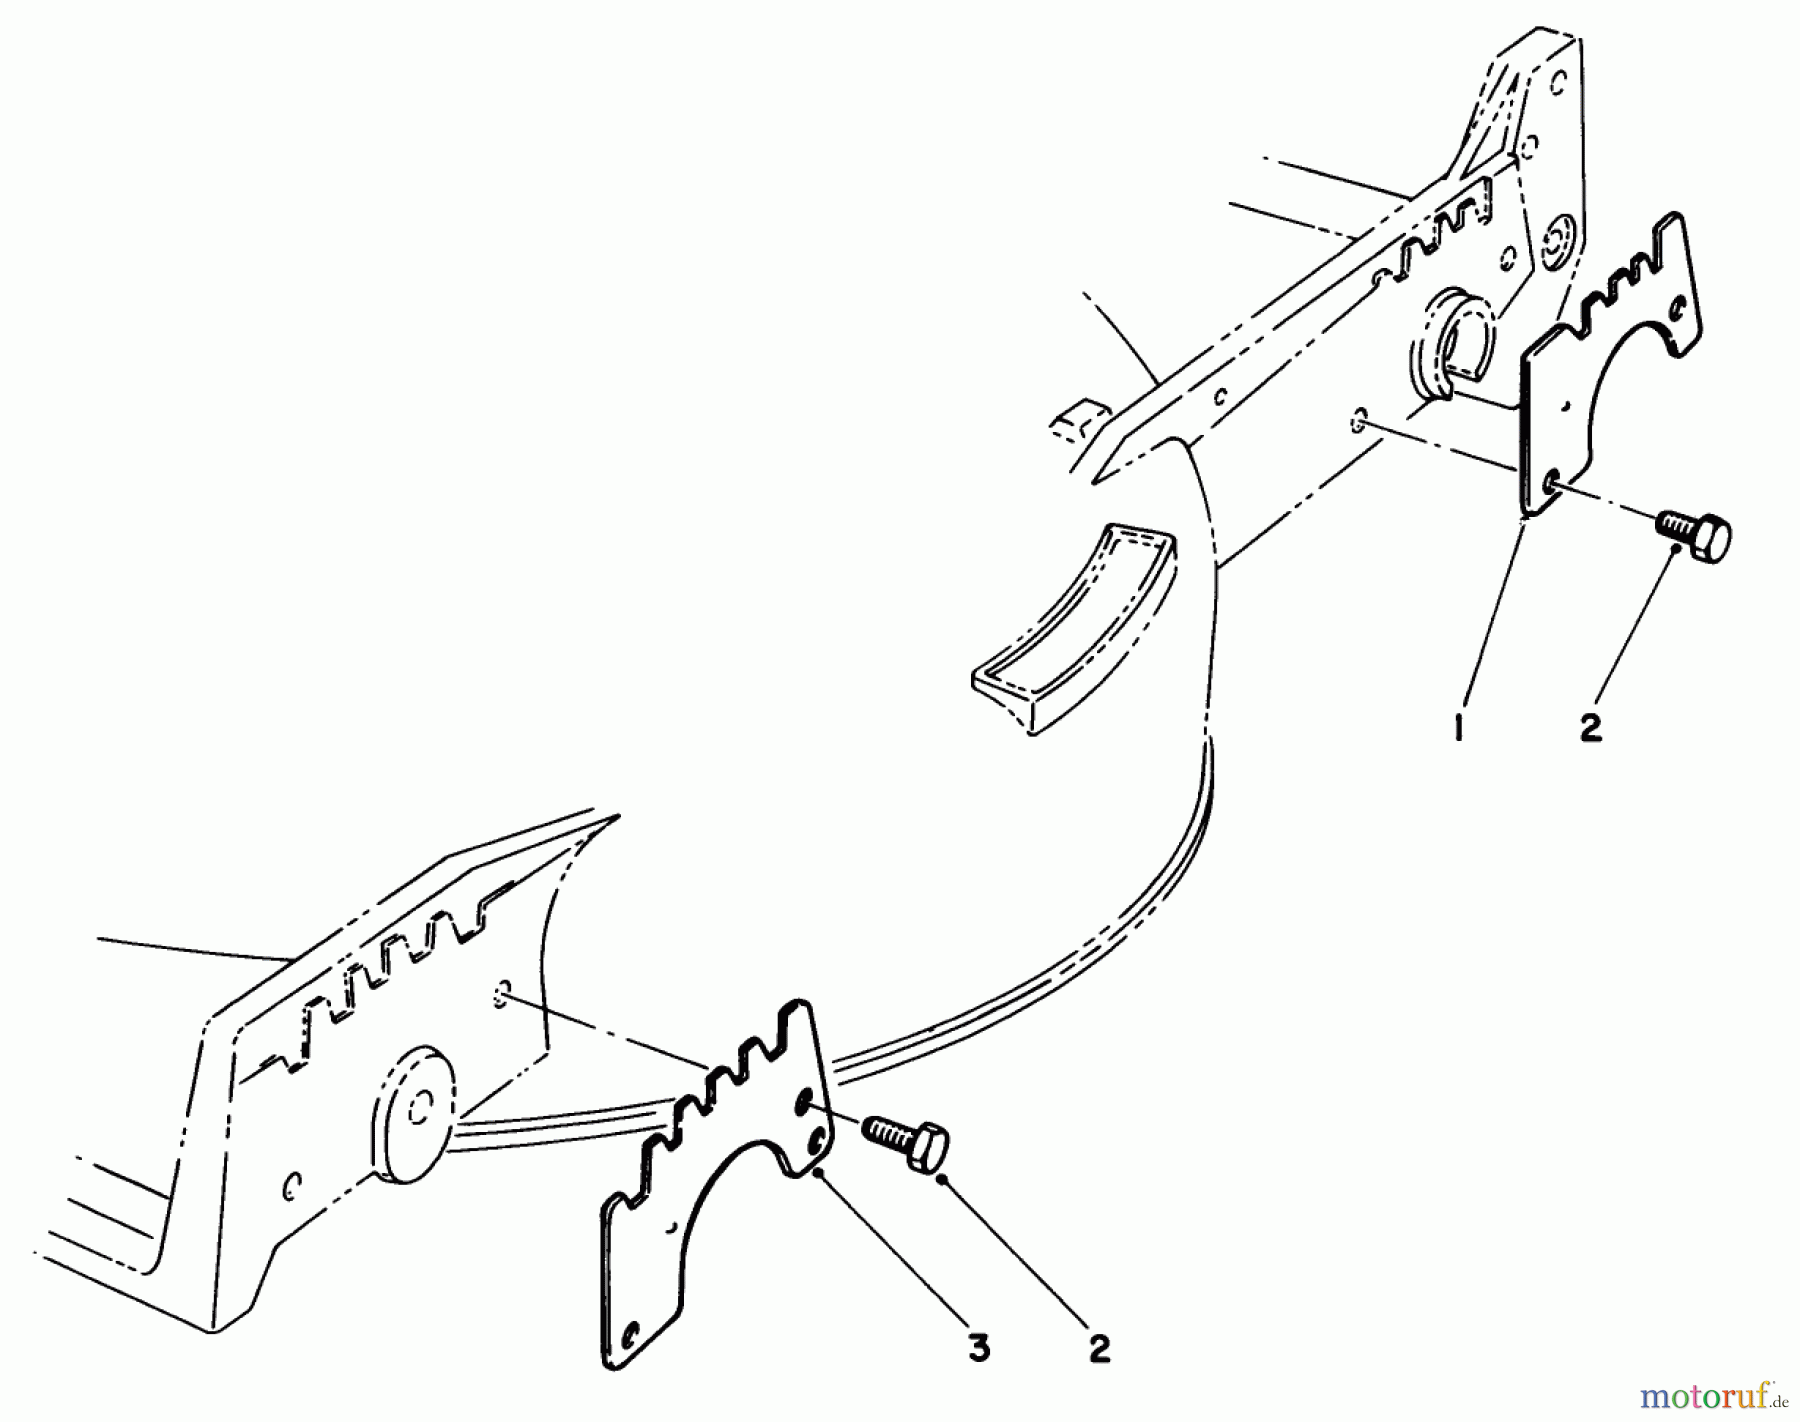  Toro Neu Mowers, Walk-Behind Seite 1 20620C - Toro Lawnmower, 1988 (8000001-8999999) WEAR PLATE KIT NO. 49-4080 (OPTIONAL)